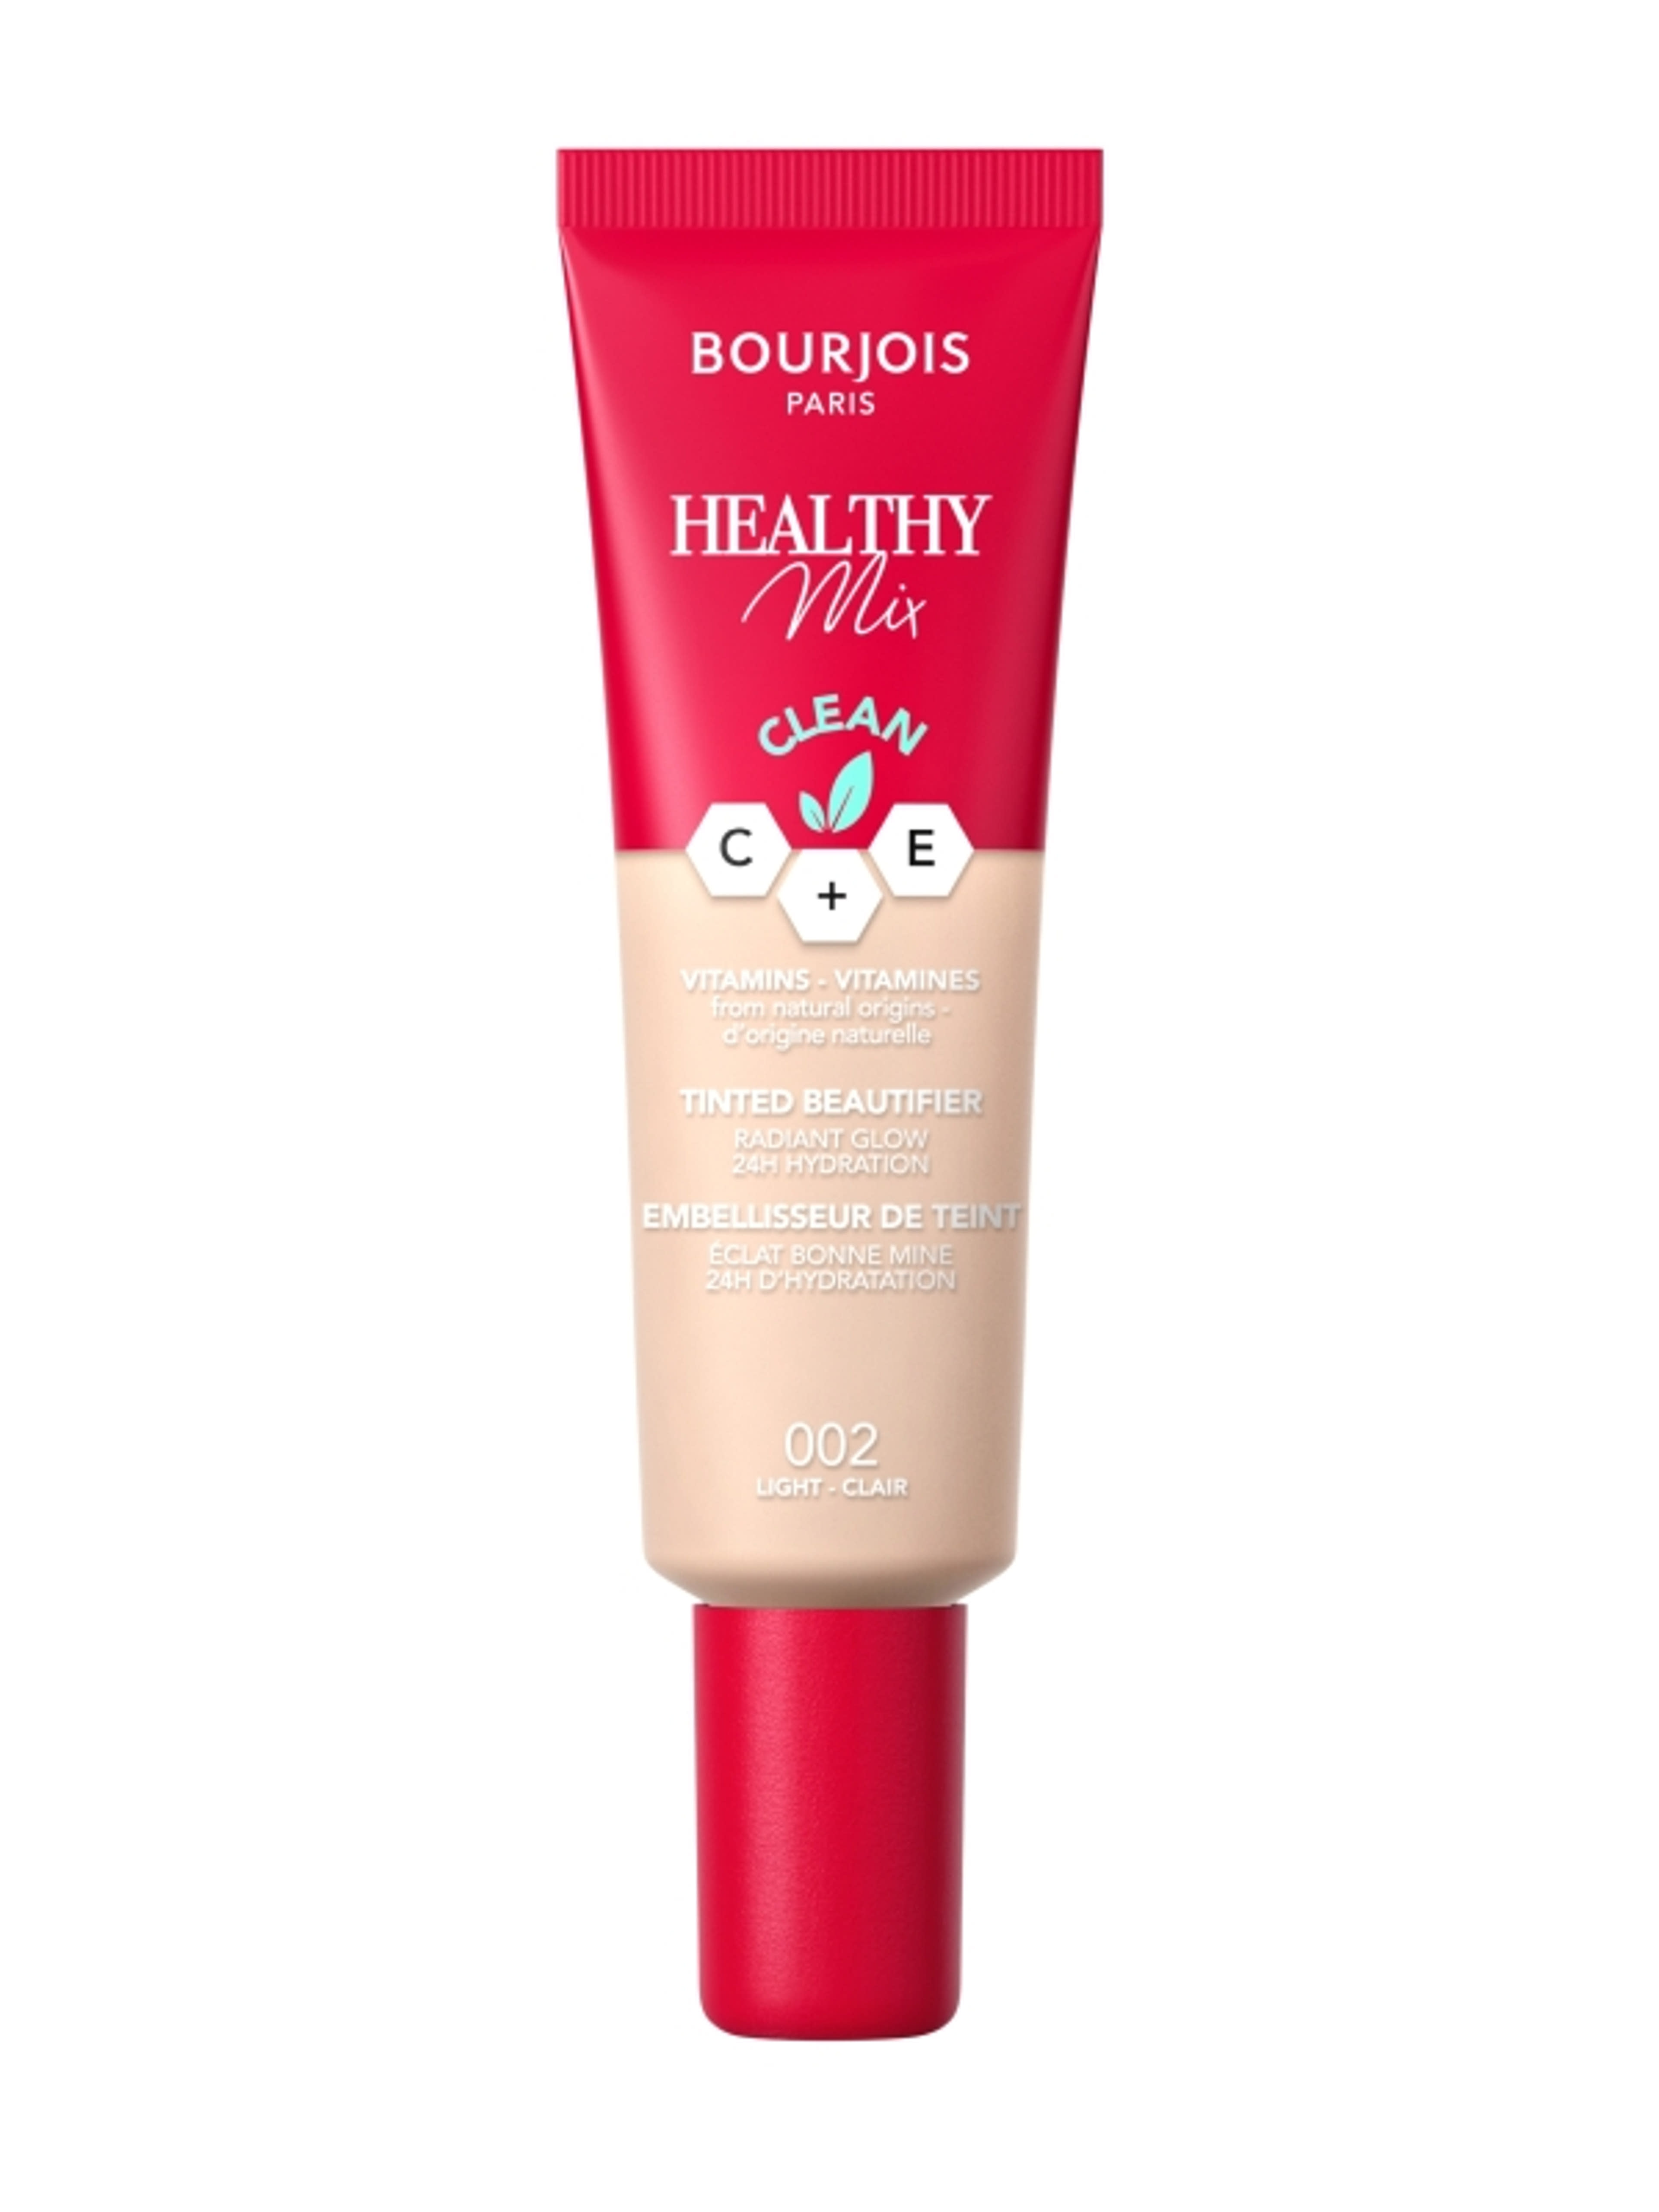 Bourjois Healthy Mix színezett arckrém /002 - 1 db-1